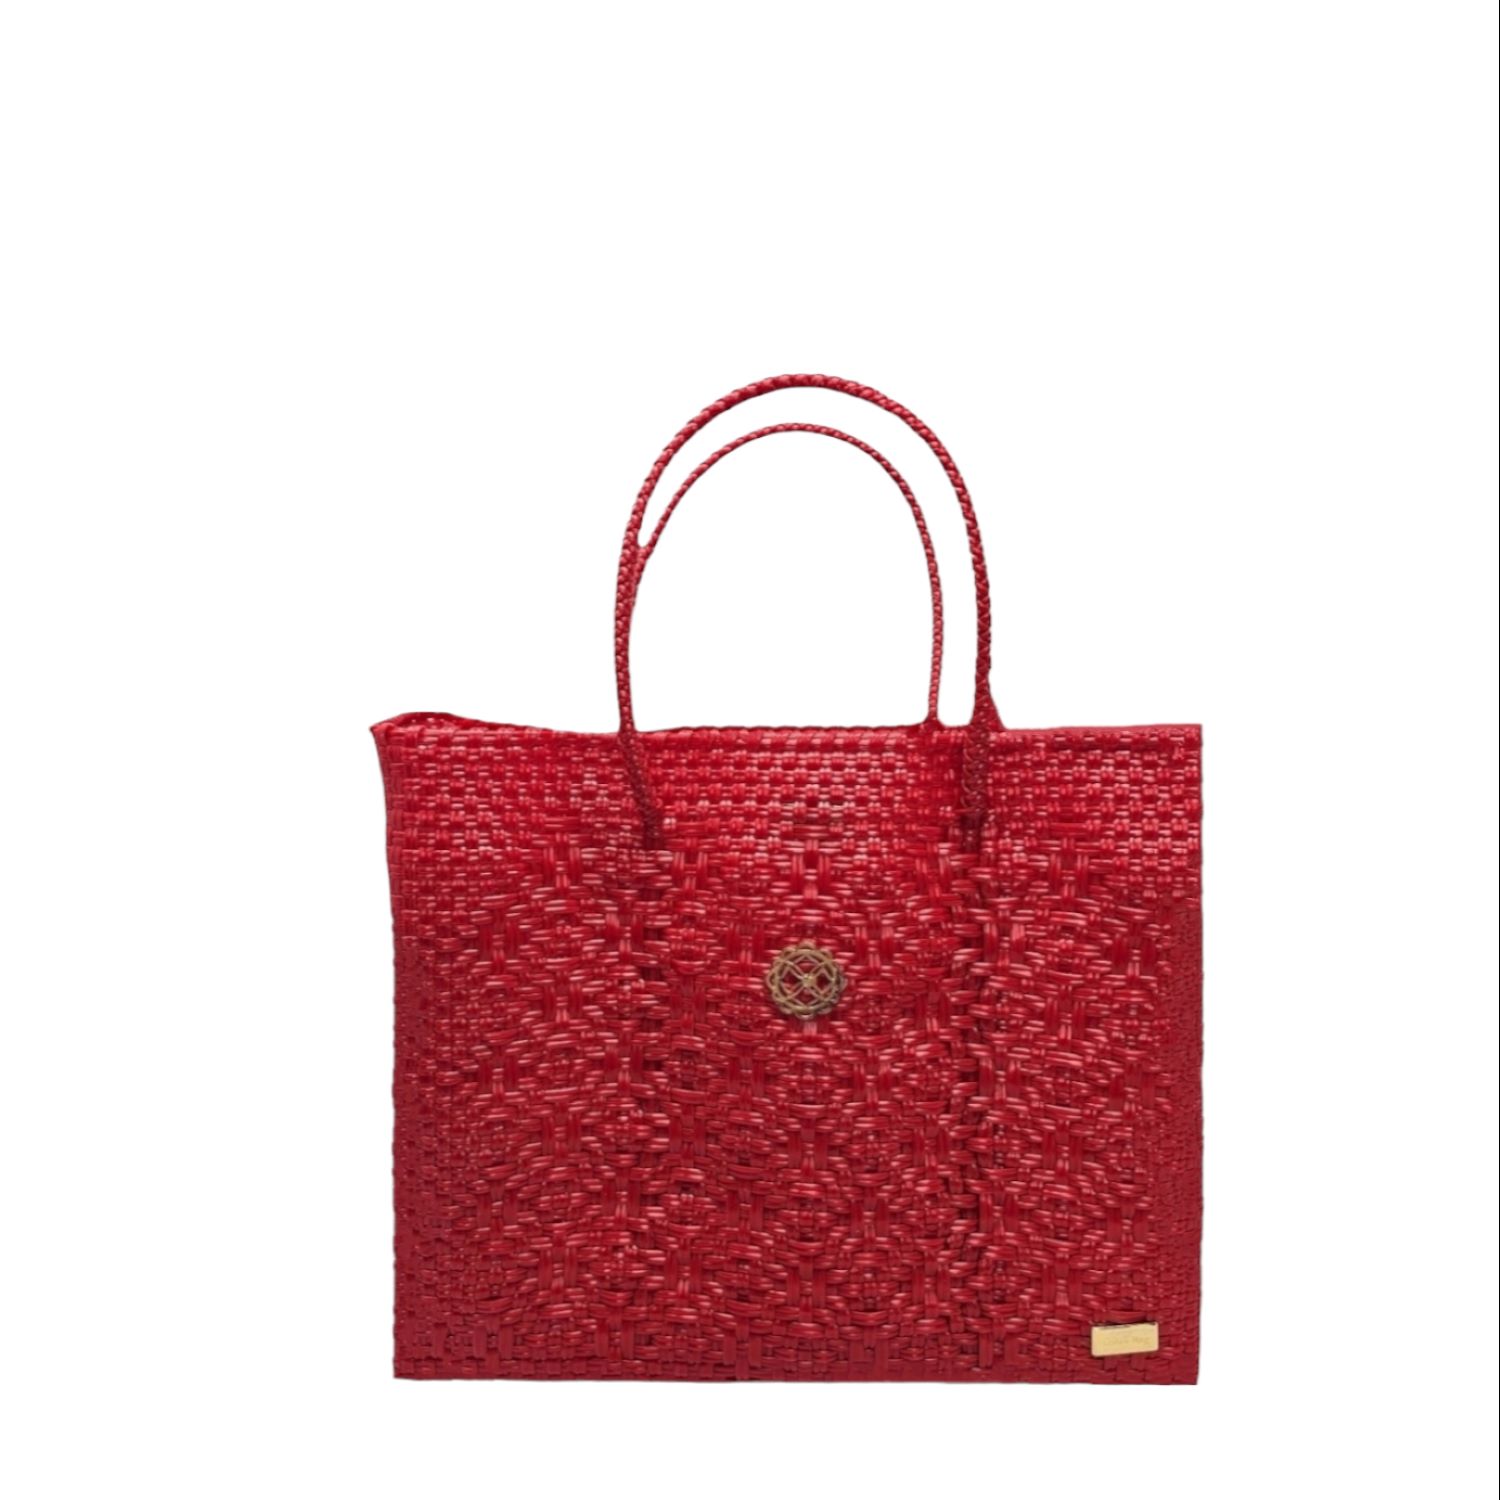 Women’s Small Red Tote Bag Lolas Bag